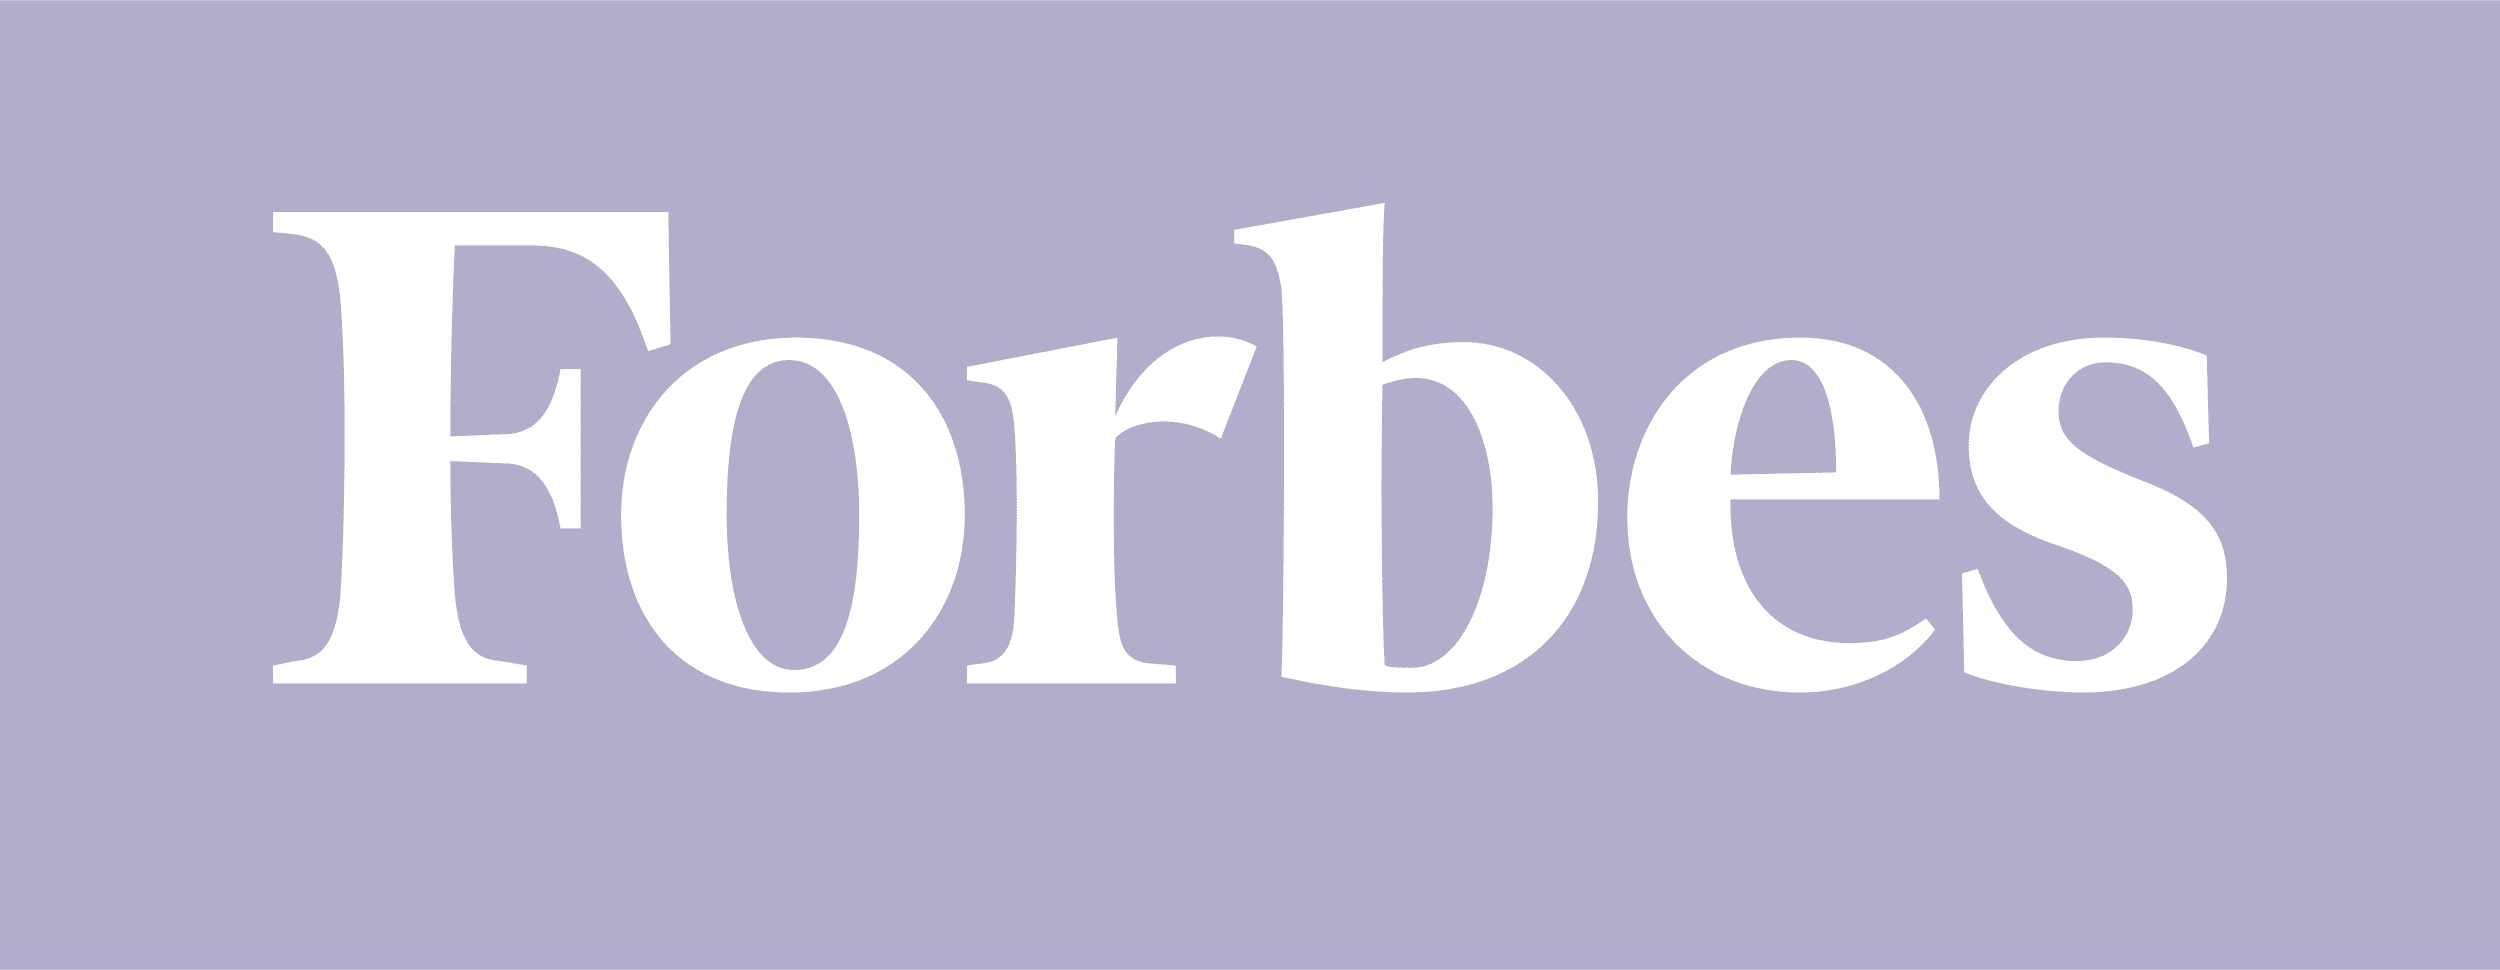 Logotipo da Forbes